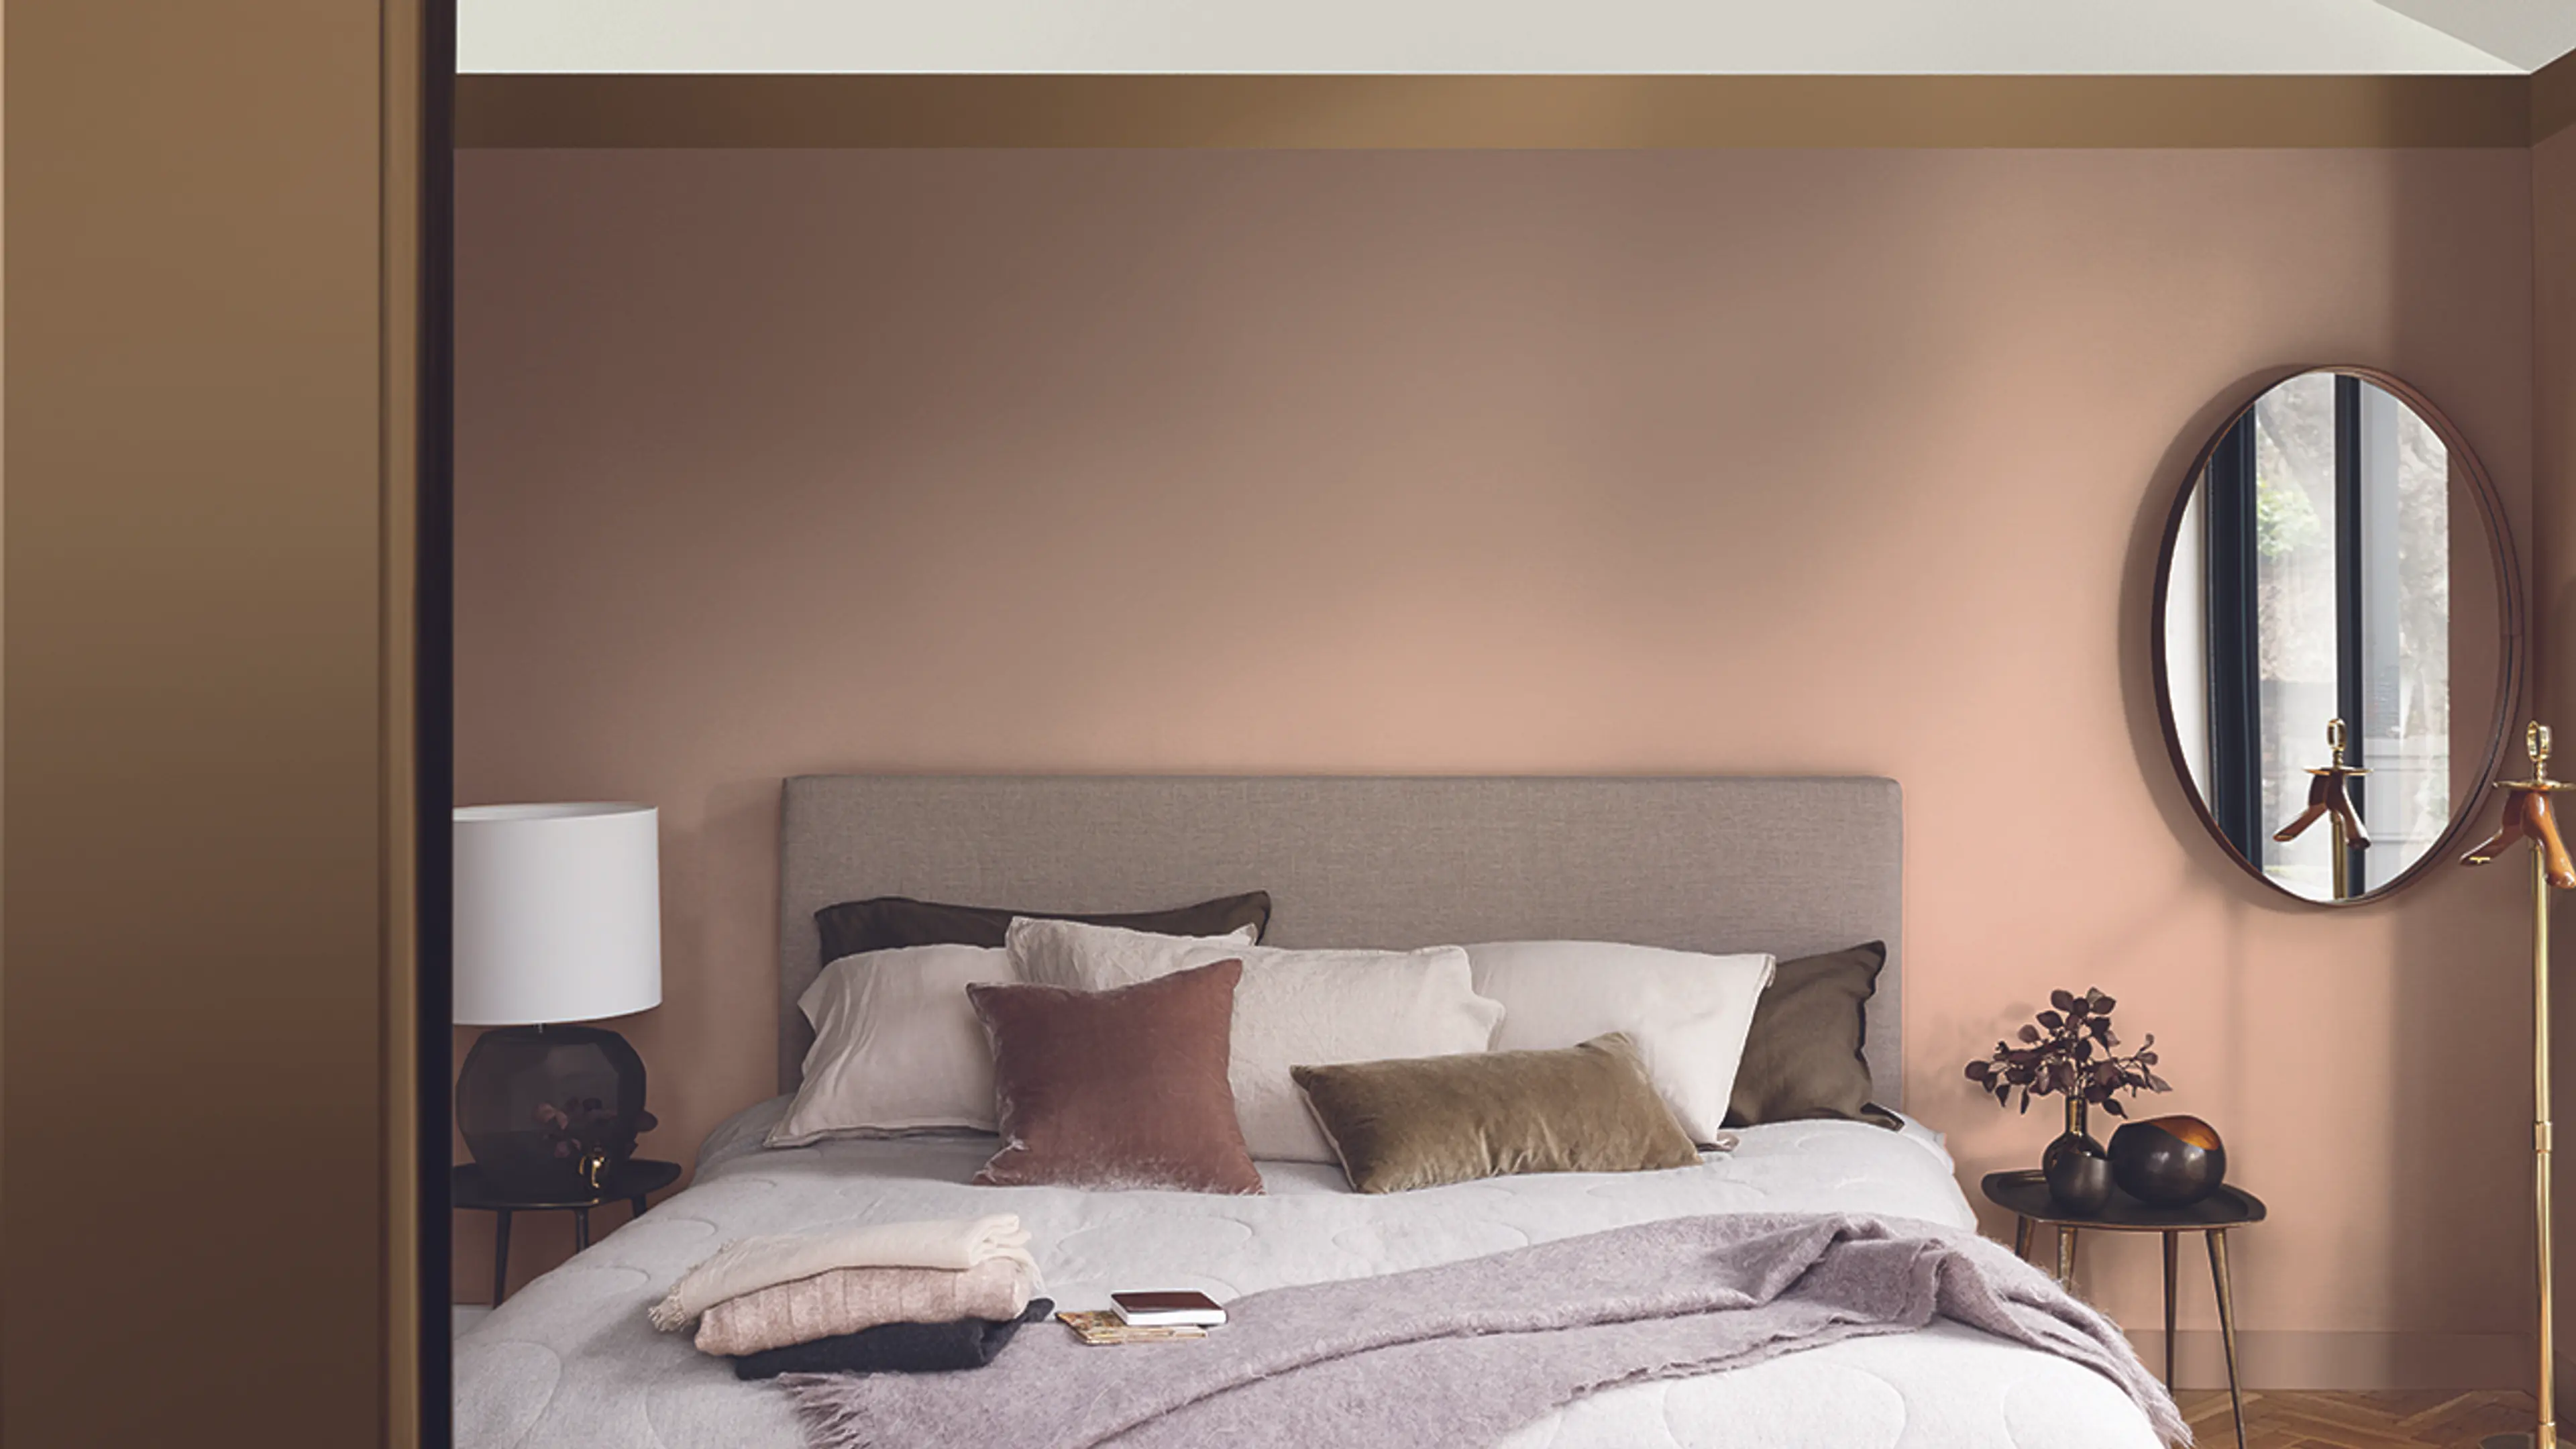 Hotellfølelse på soverommet med brune vegger og stor dobbeltseng med fluffy puter.